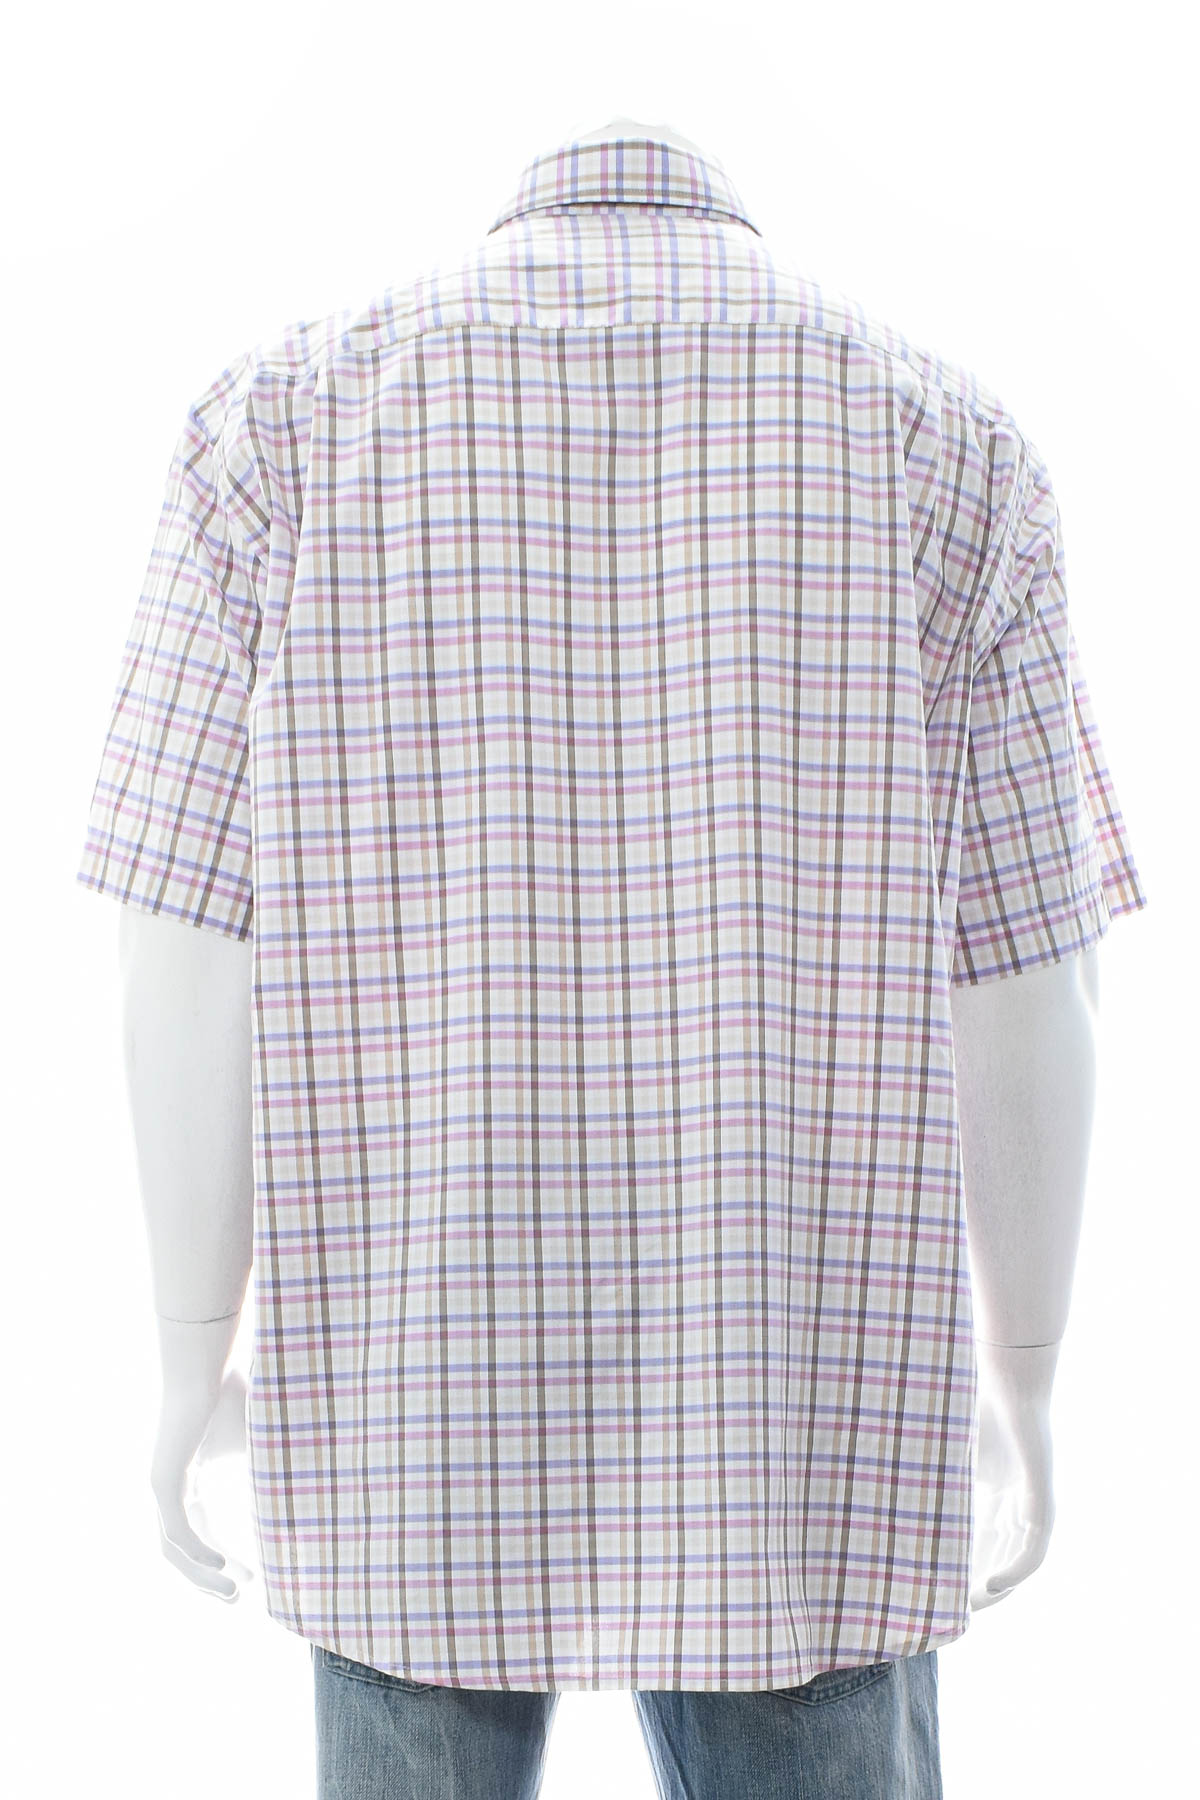 Men's shirt - Seidensticker - 1